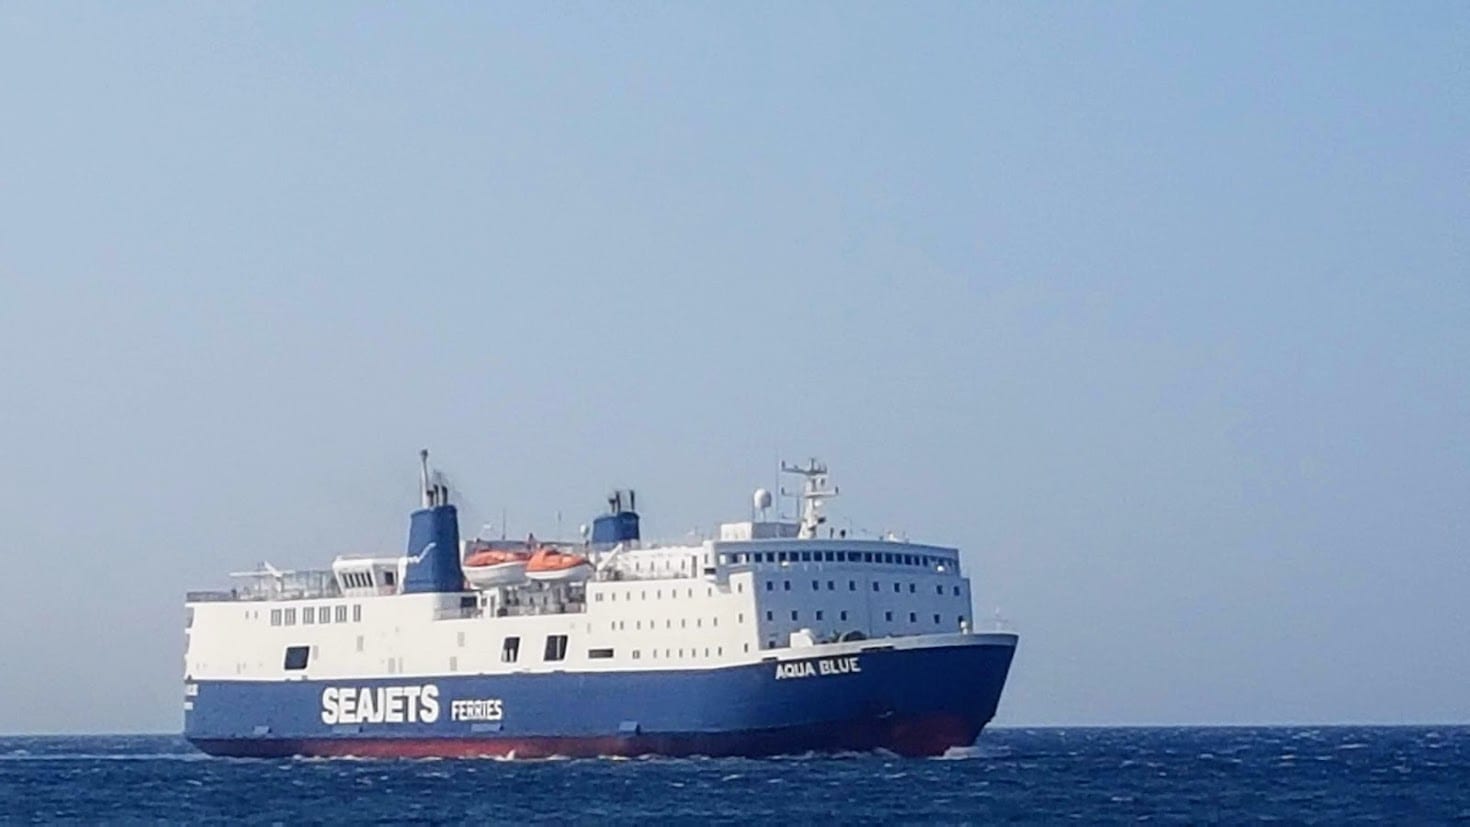 Seajets ferry in Greece